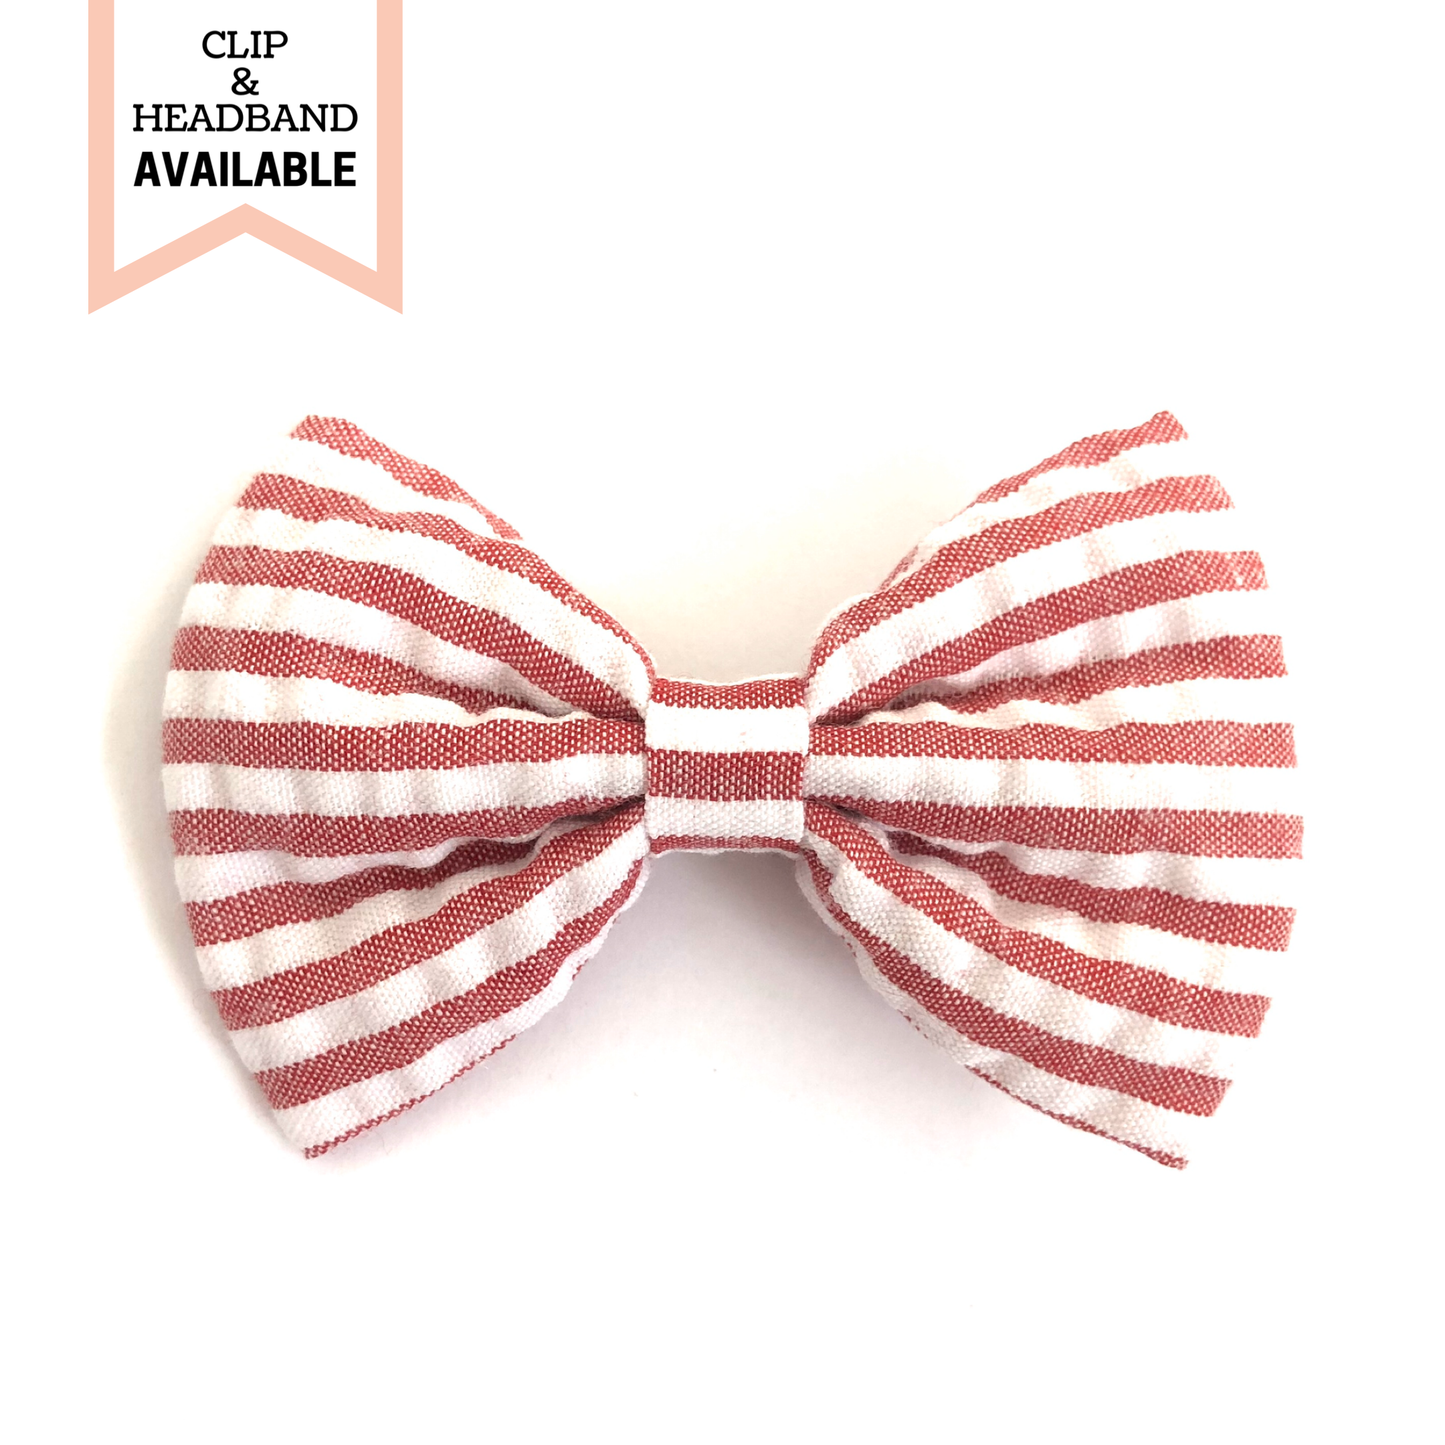 Hailey || Red & White Striped Seersucker